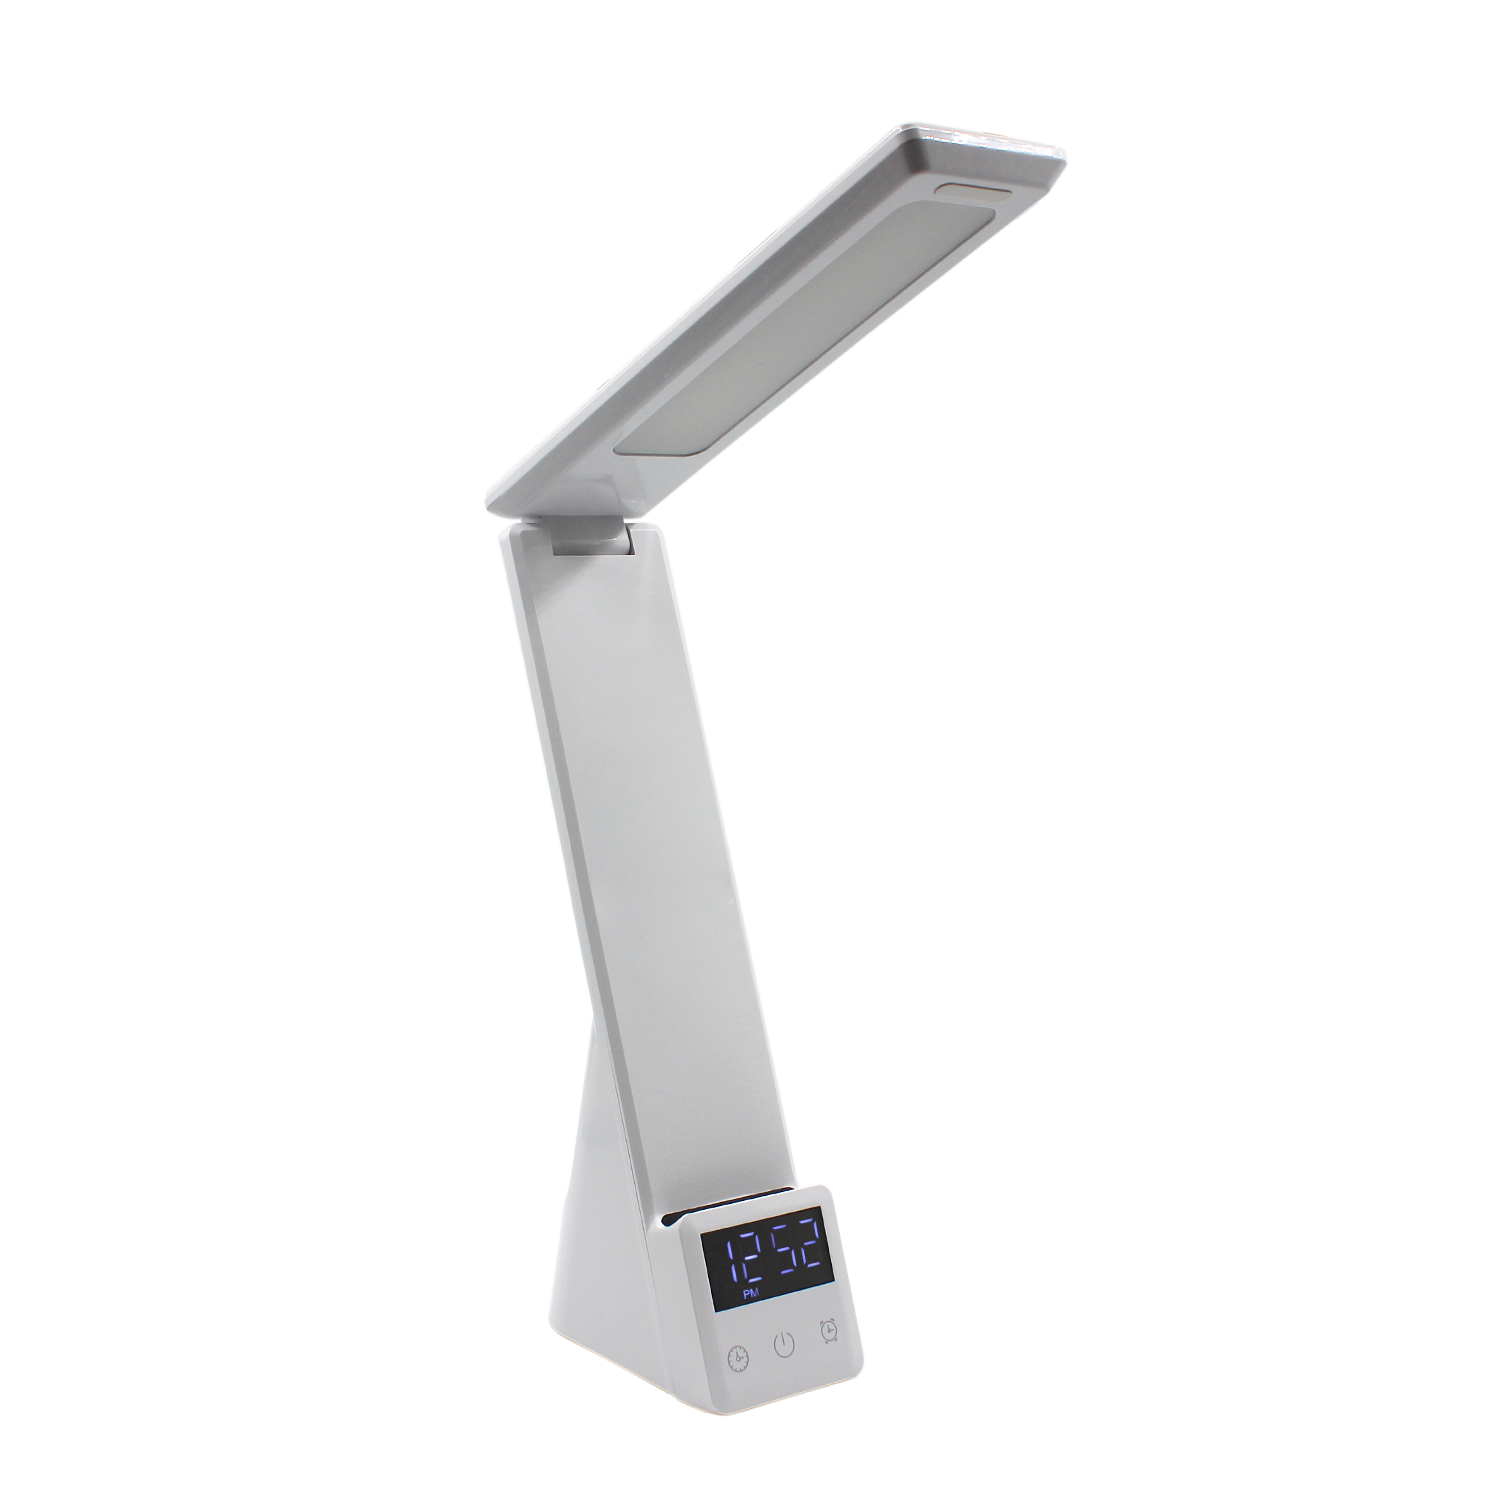 Многофункциональная лампа 6 в 1,  Lightronic (Белый), белый, пластик